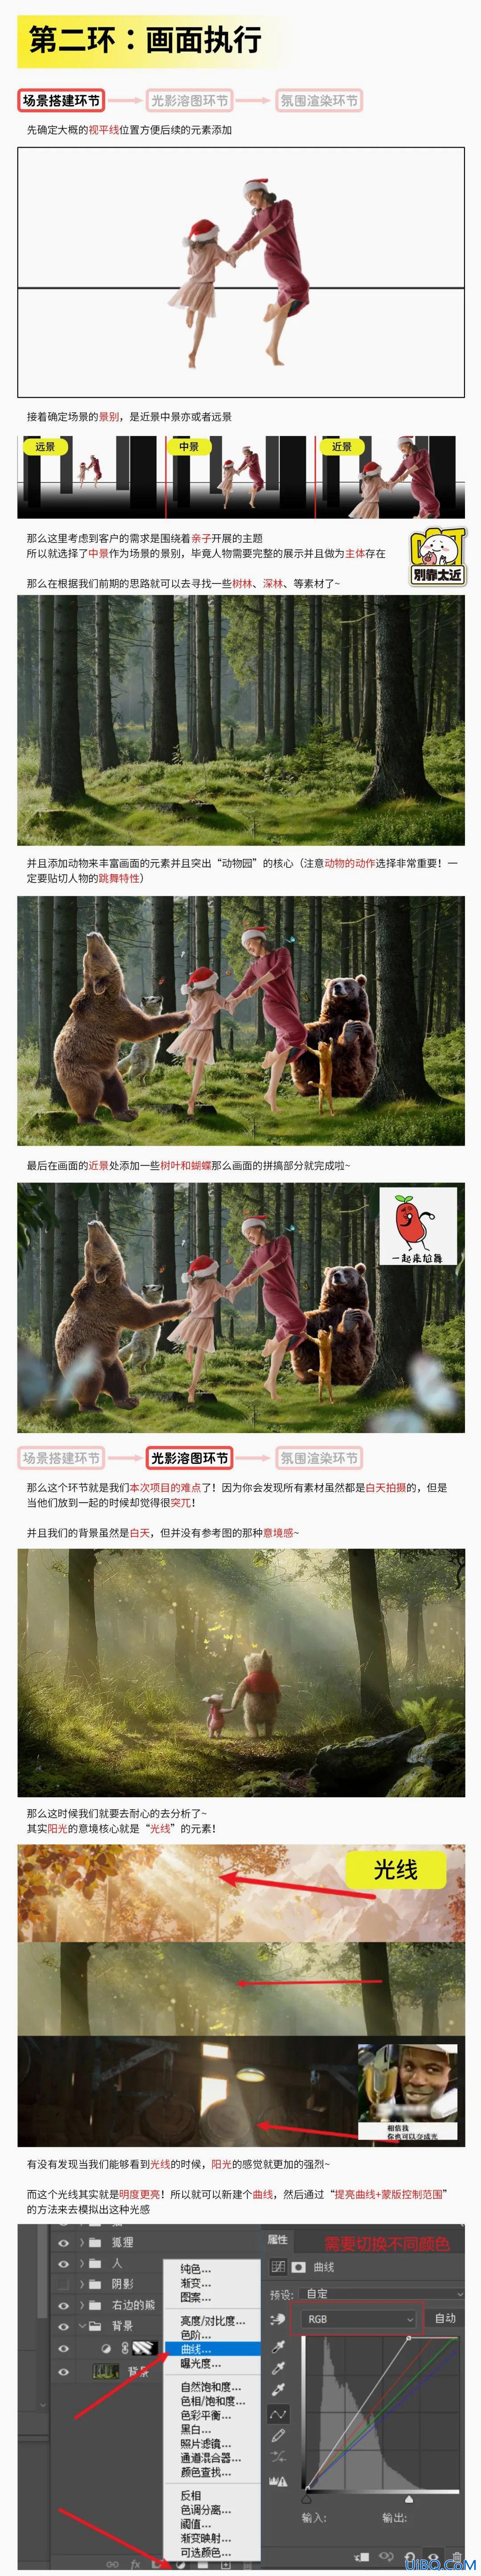 Photoshop合成教程：创意打造在森林中亲子互动的场景,亲子乐园合成。